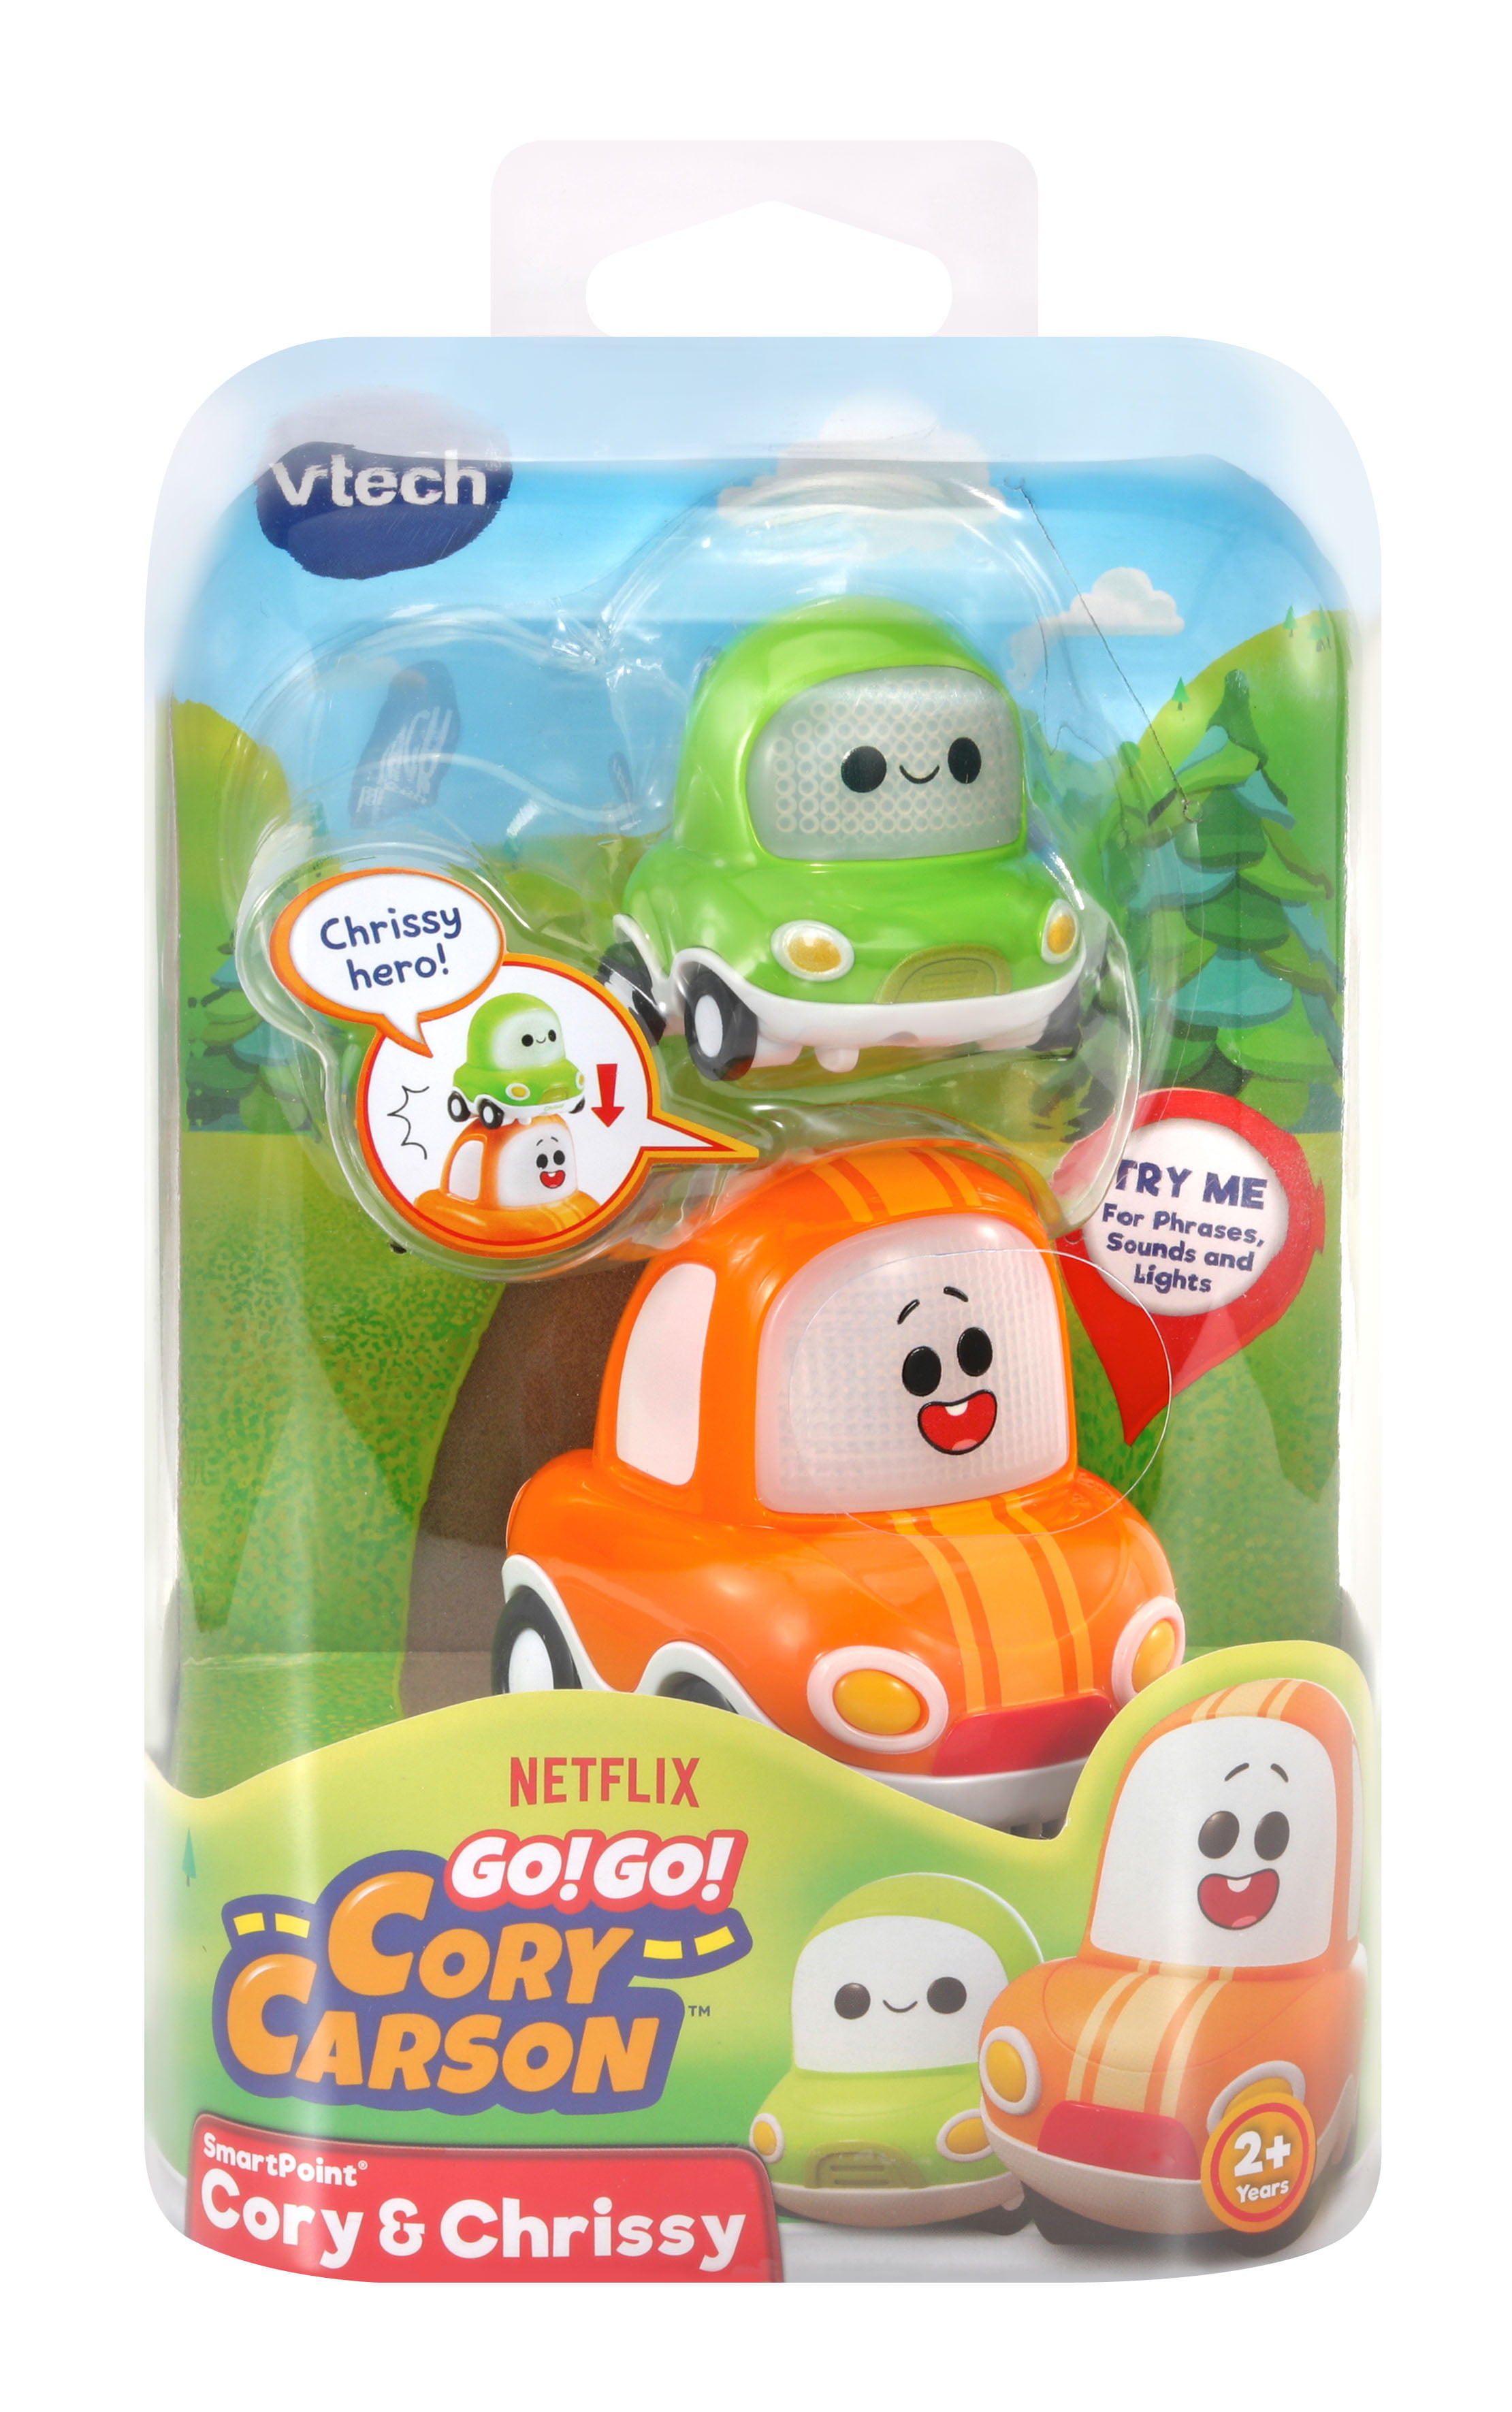 Vtech Toot-Toot Cory Carson ® smartpoint ™ Auto di Cory Educativo Giocattolo per Bambini 